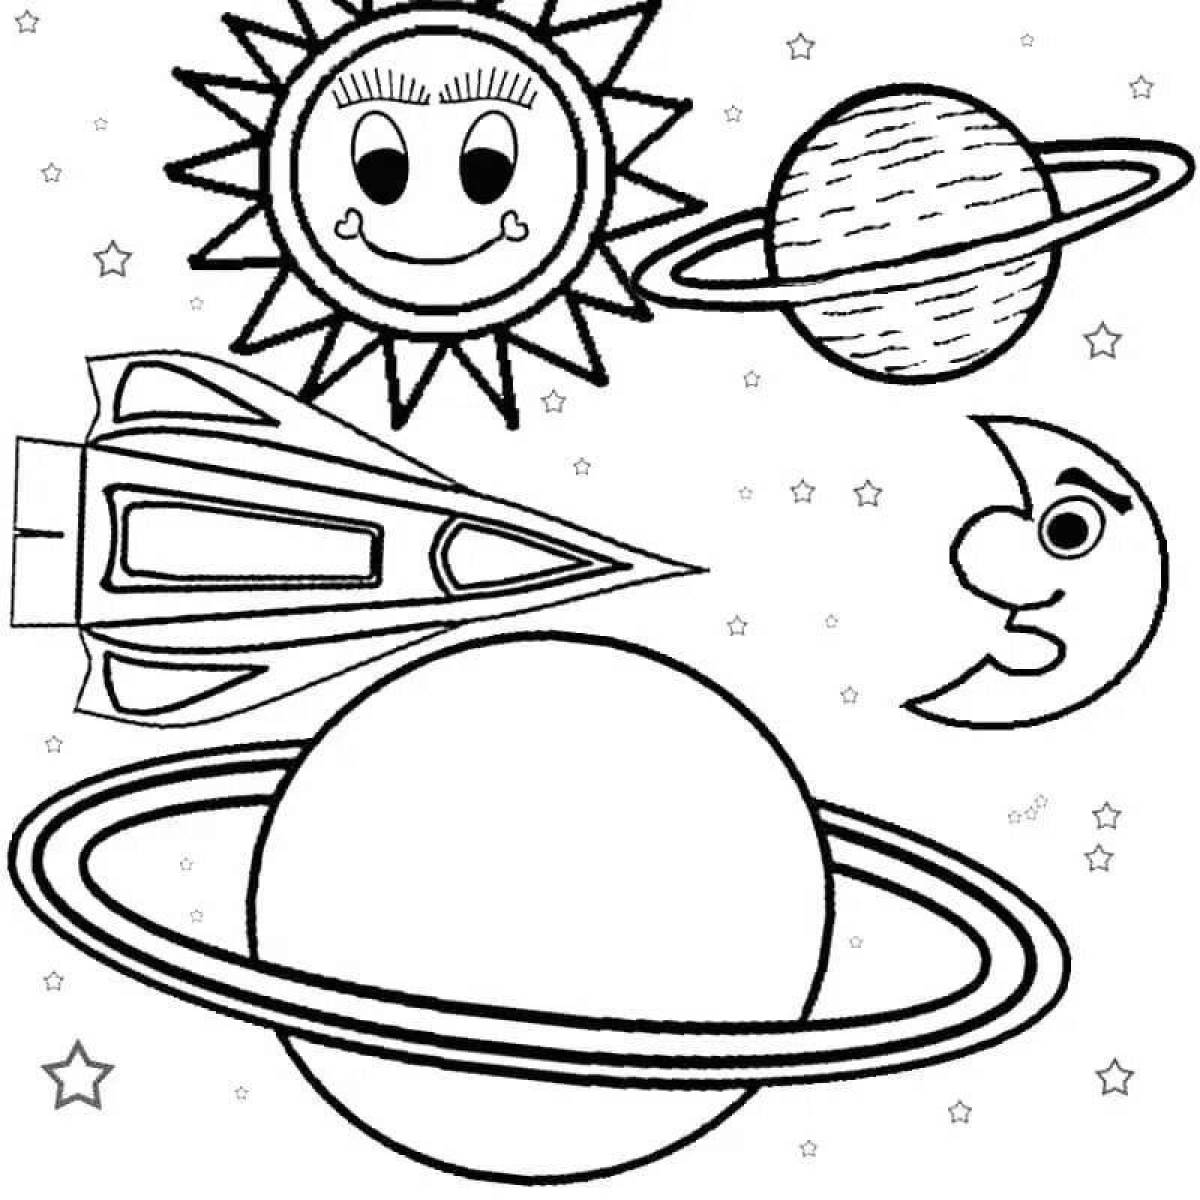 Раскраски к дню космонавтики для детей распечатать. Раскраска космос и планеты. Космос раскраска для детей. Планеты раскраска. Космические раскраски для детей.